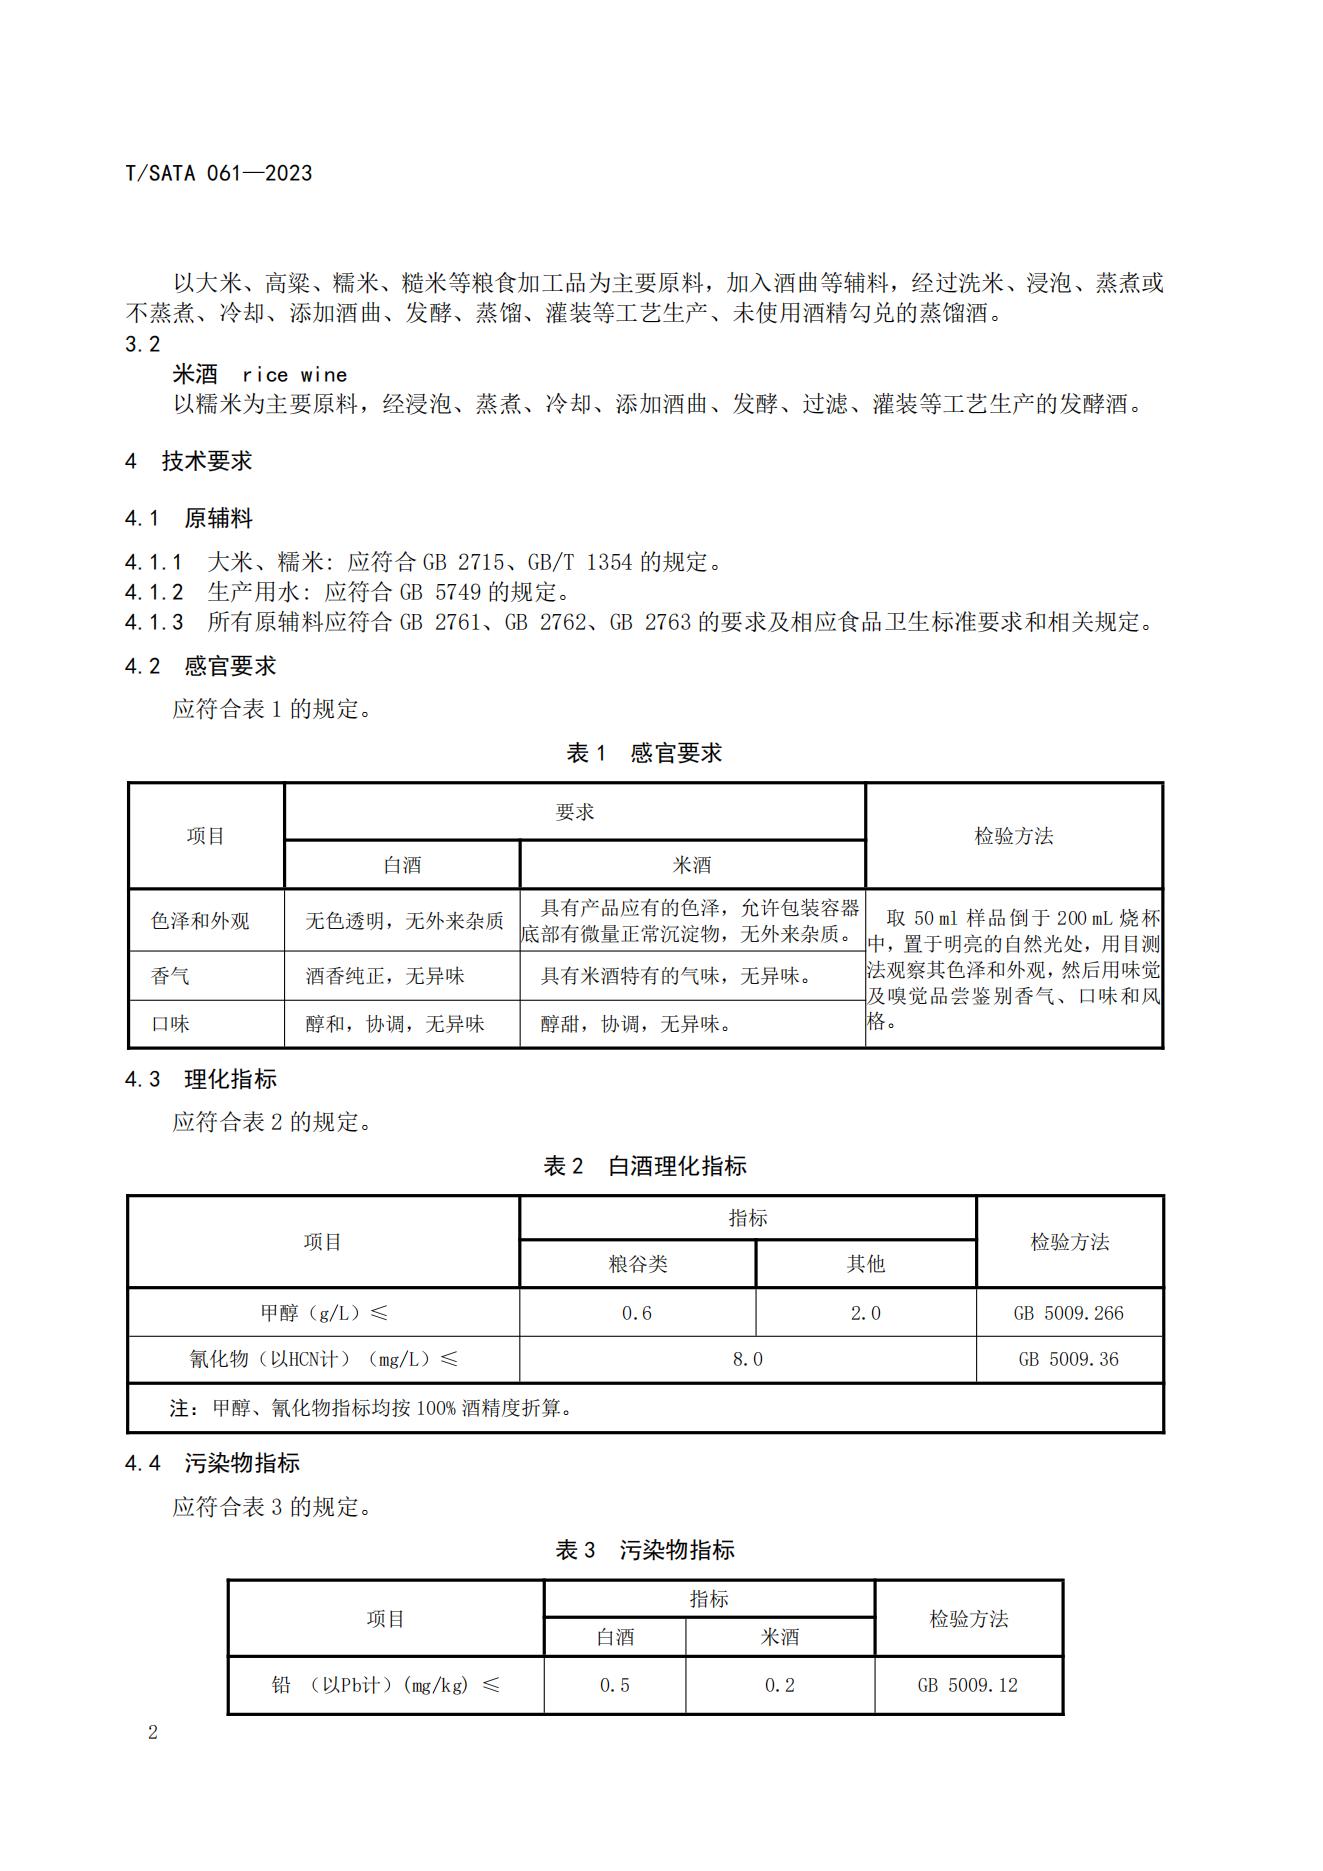 TSATA 061-2023 标准文本-小作坊食品  白酒及米酒_05.jpg